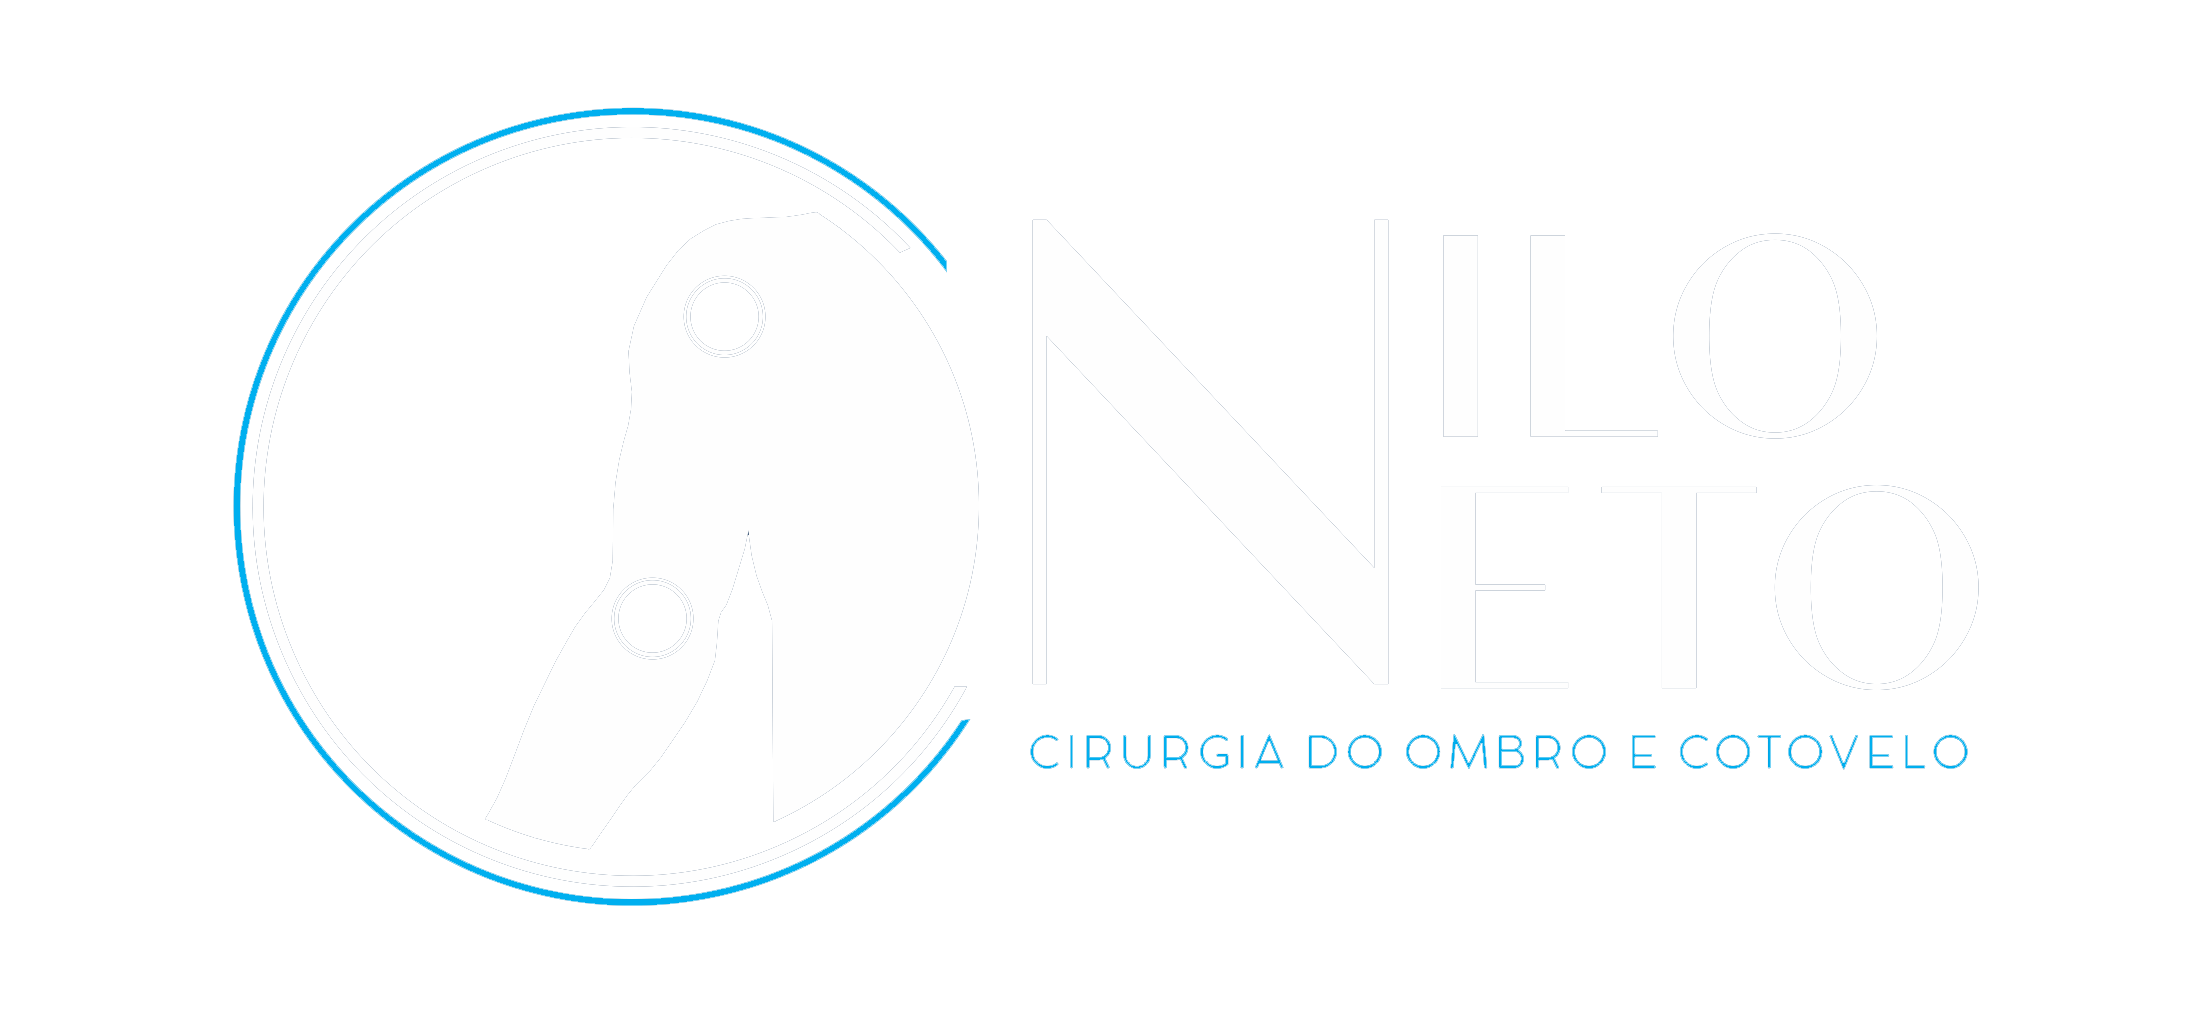 Dr. Nilo Neto